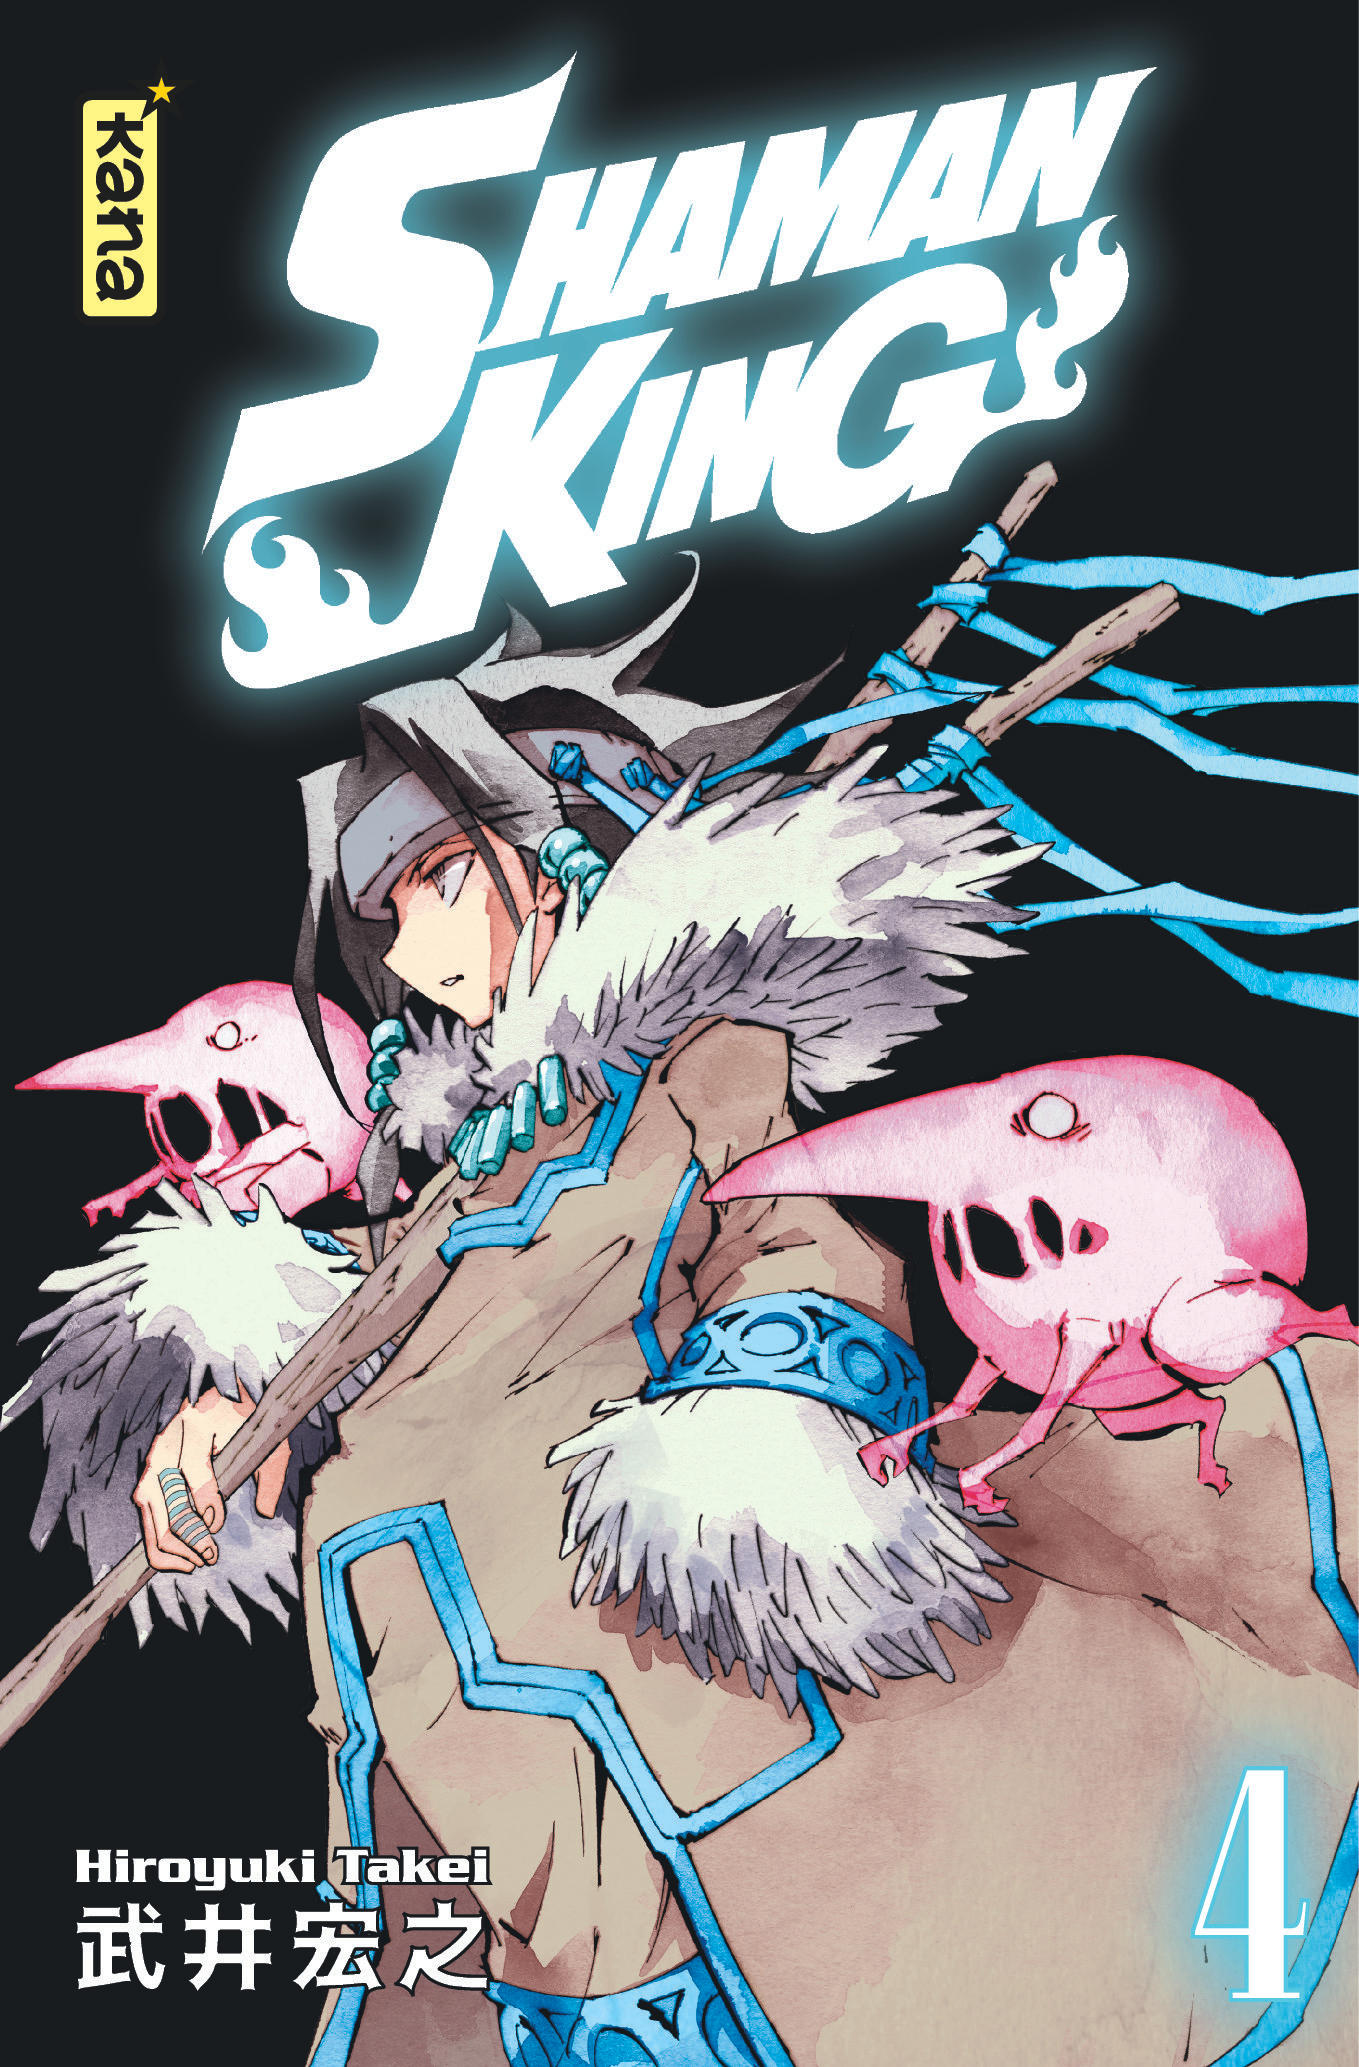 Cover#20  Shaman king, Shaman, King art